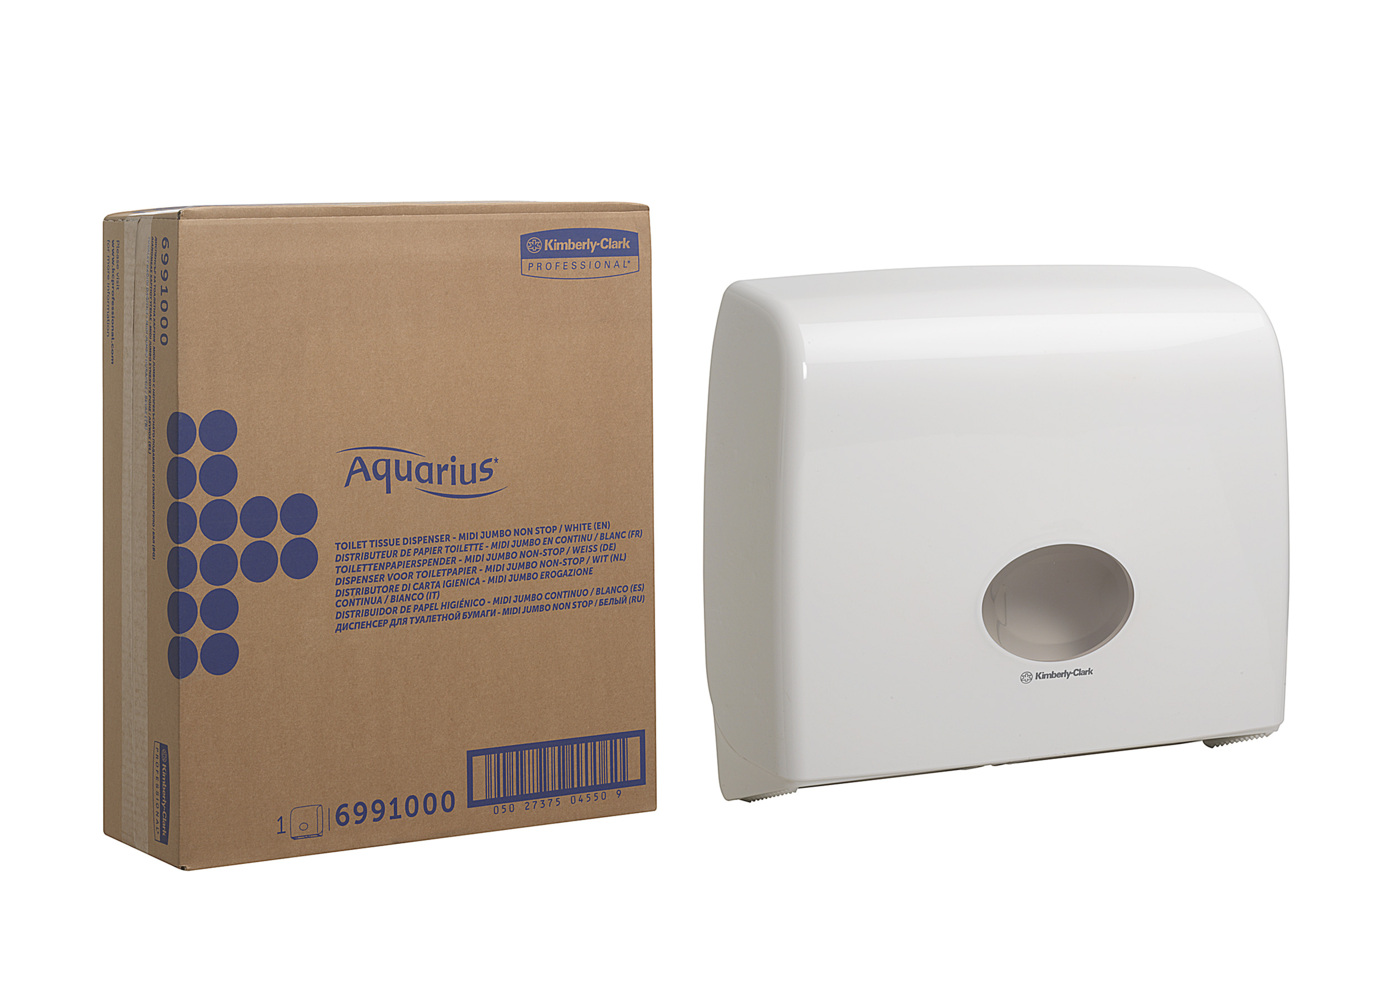 Aquarius™ Jumbo Nonstop-Spender für Toilettenpapier 6991 – Weiß - 6991